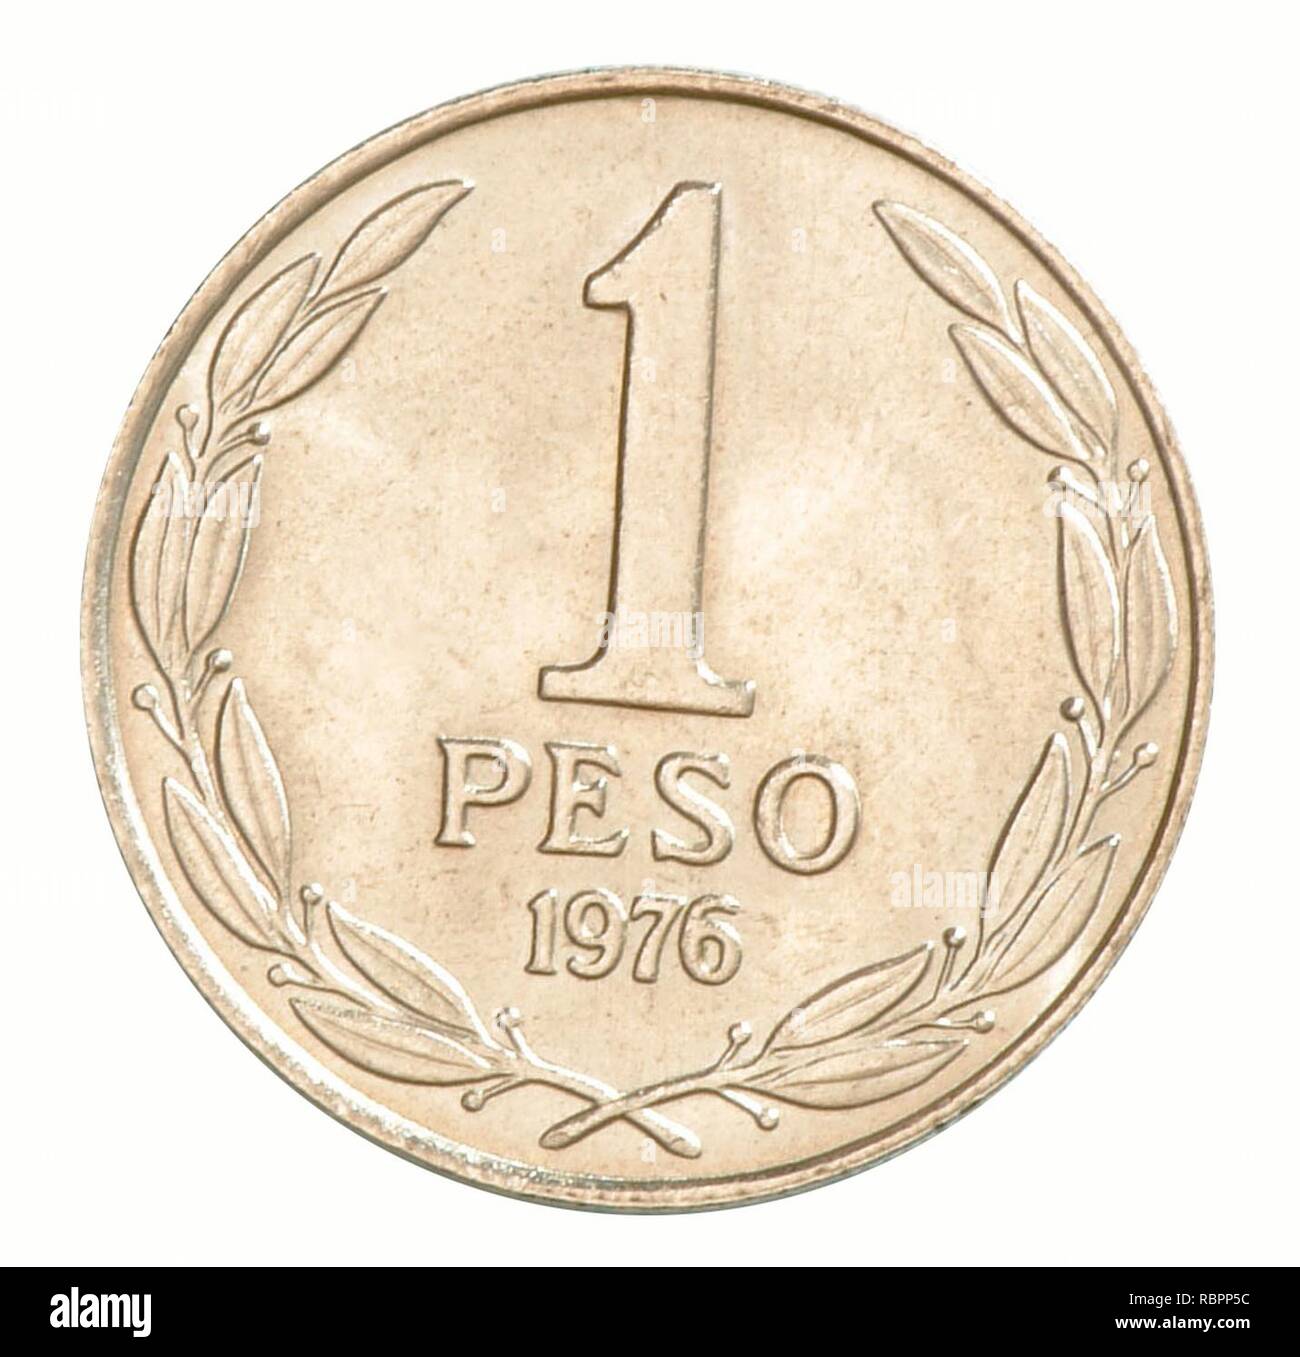 1 peso chileno 1976-R (32207590515). Stock Photo